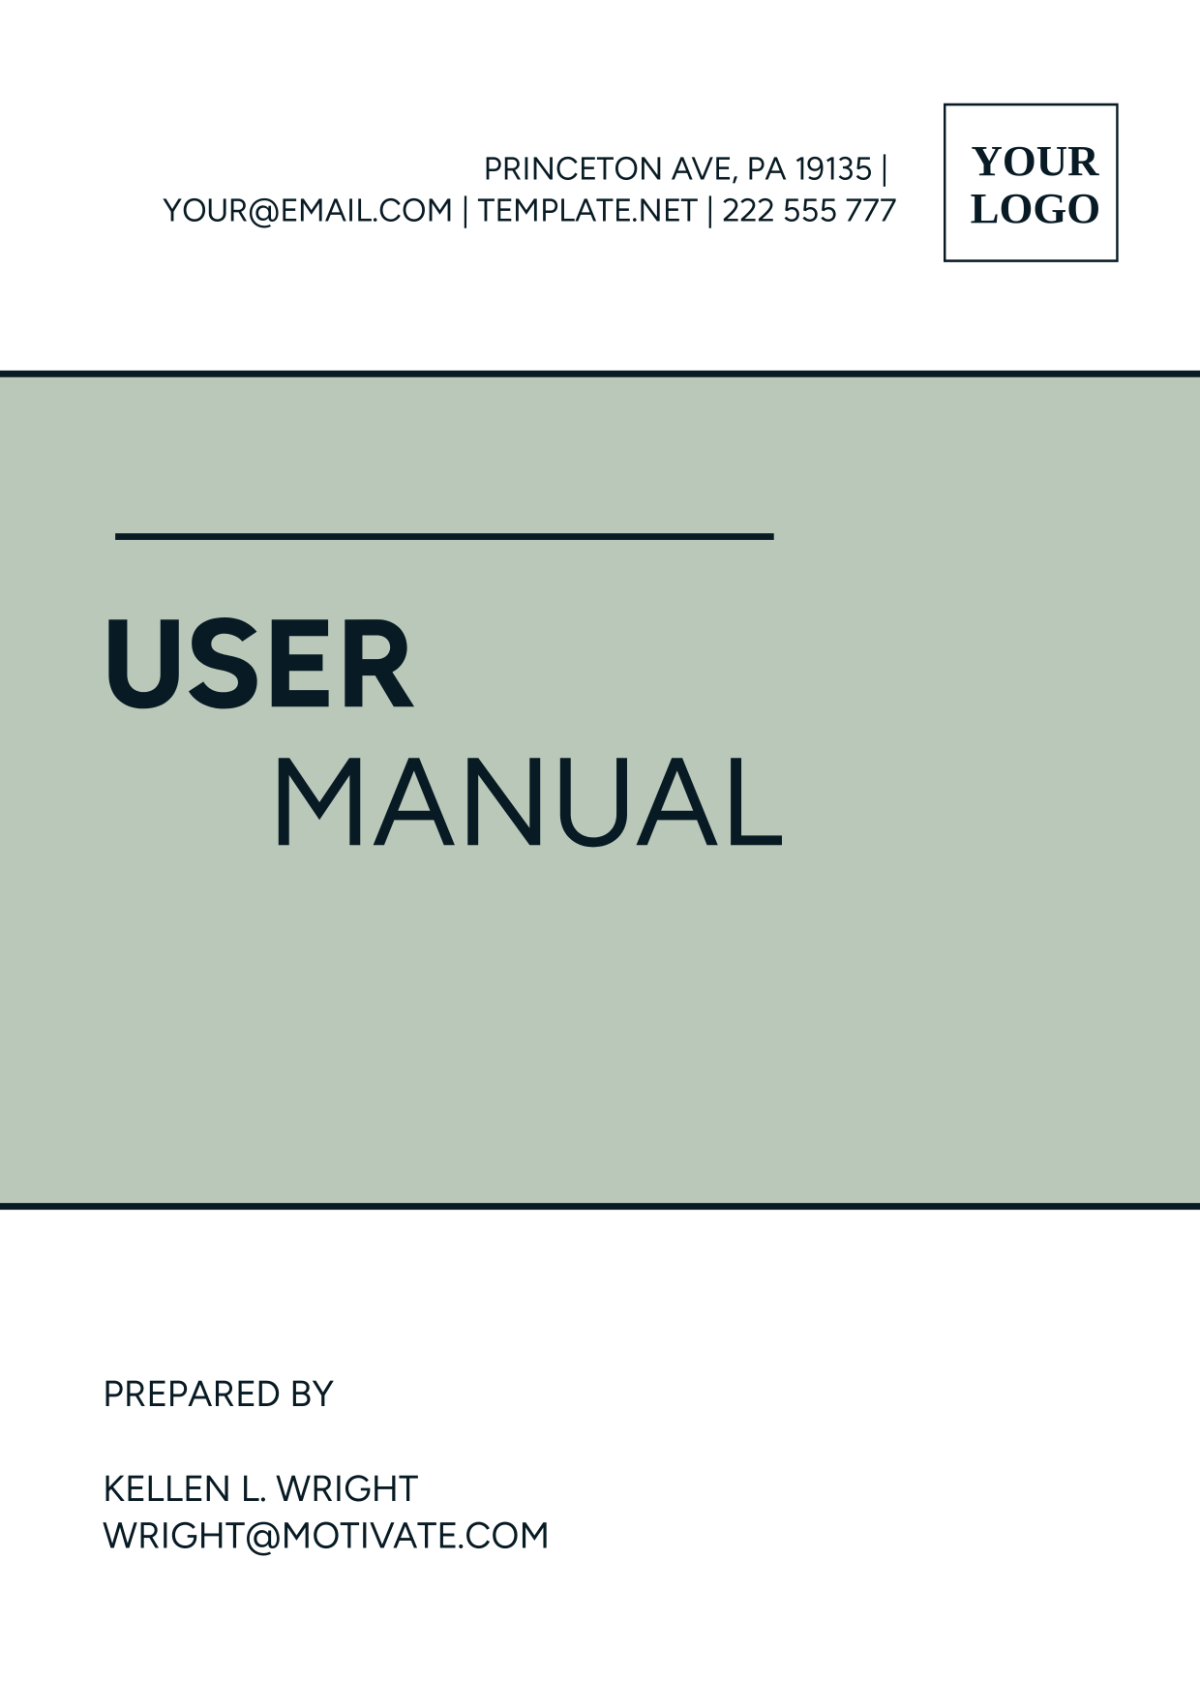 User Manual Template